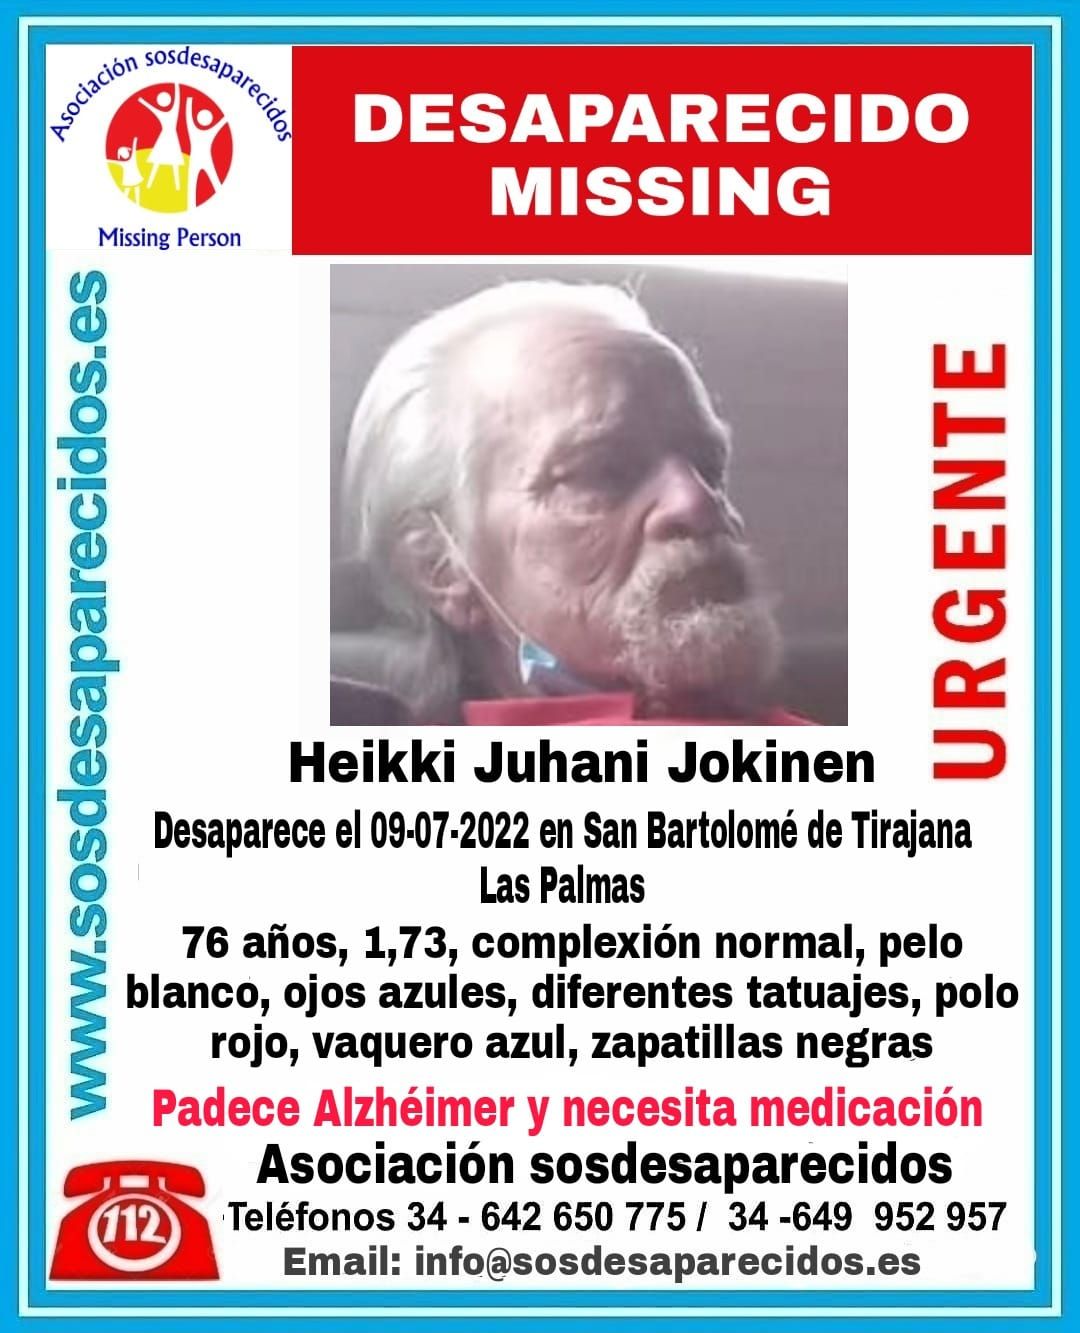 Heikki Juhani Jokinen, desaparecido este sábado en el sur de Gran Canaria